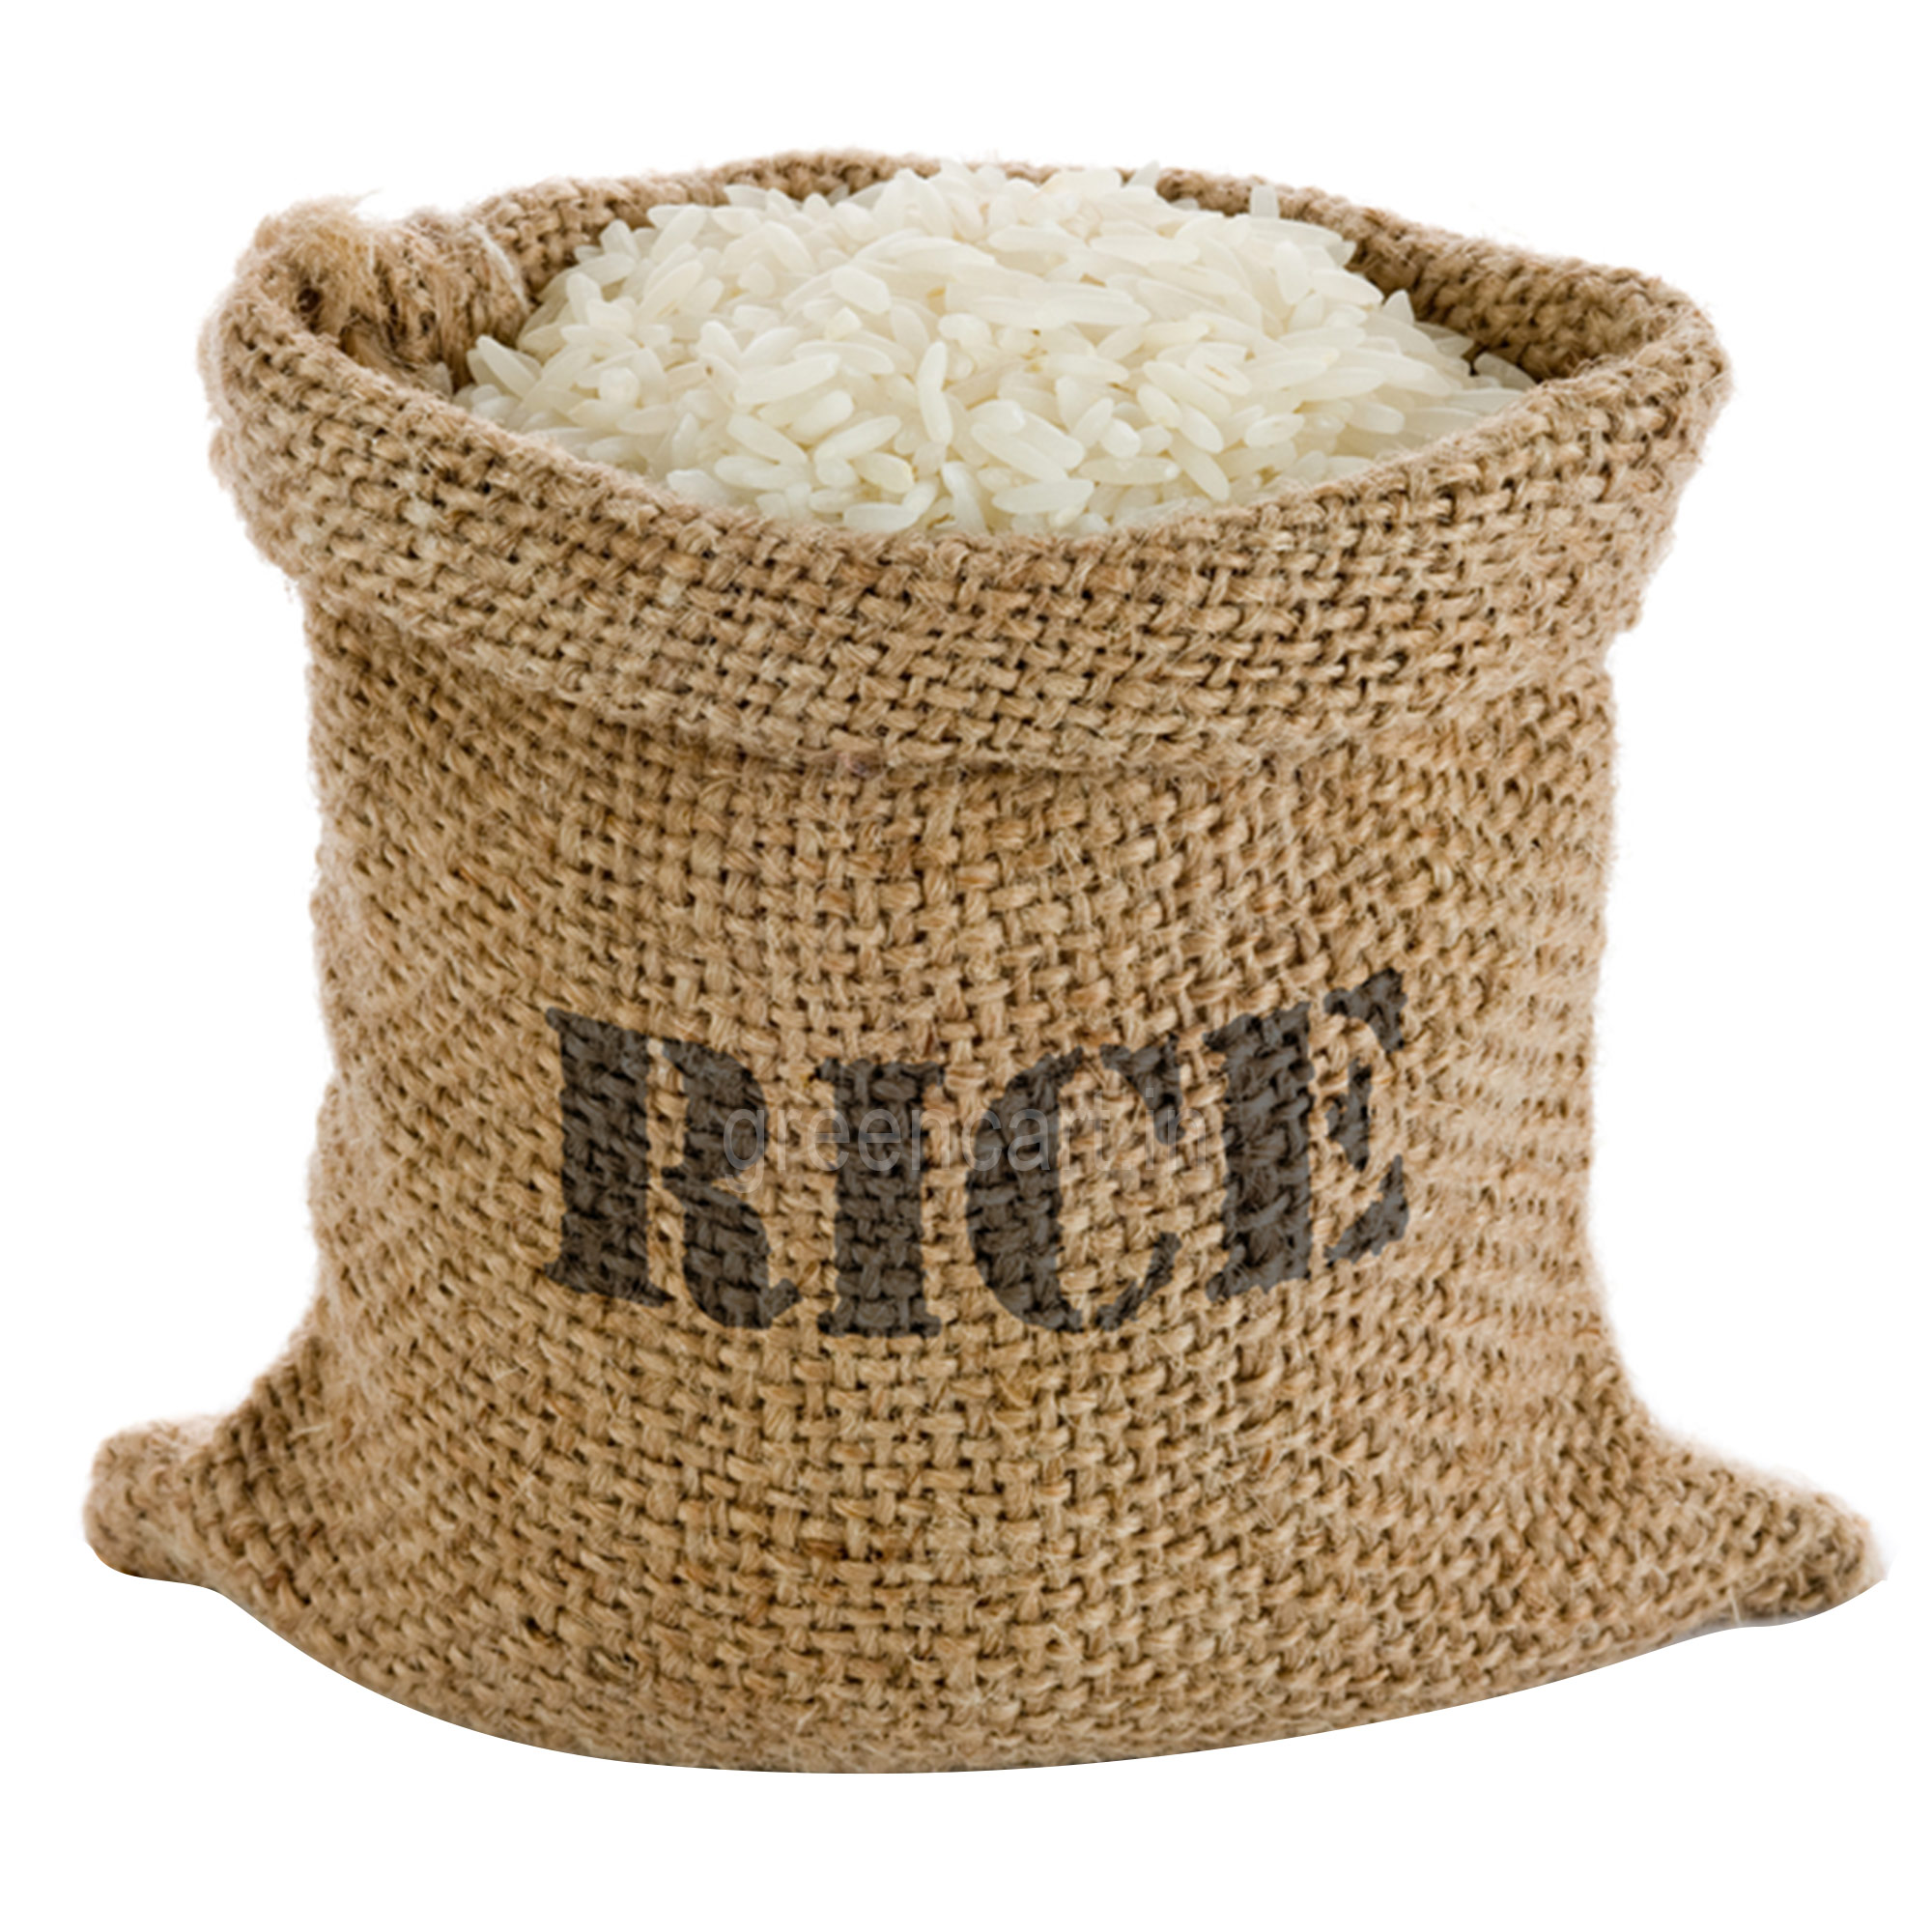 Rice sacks, Rice Sacks HQ Pic